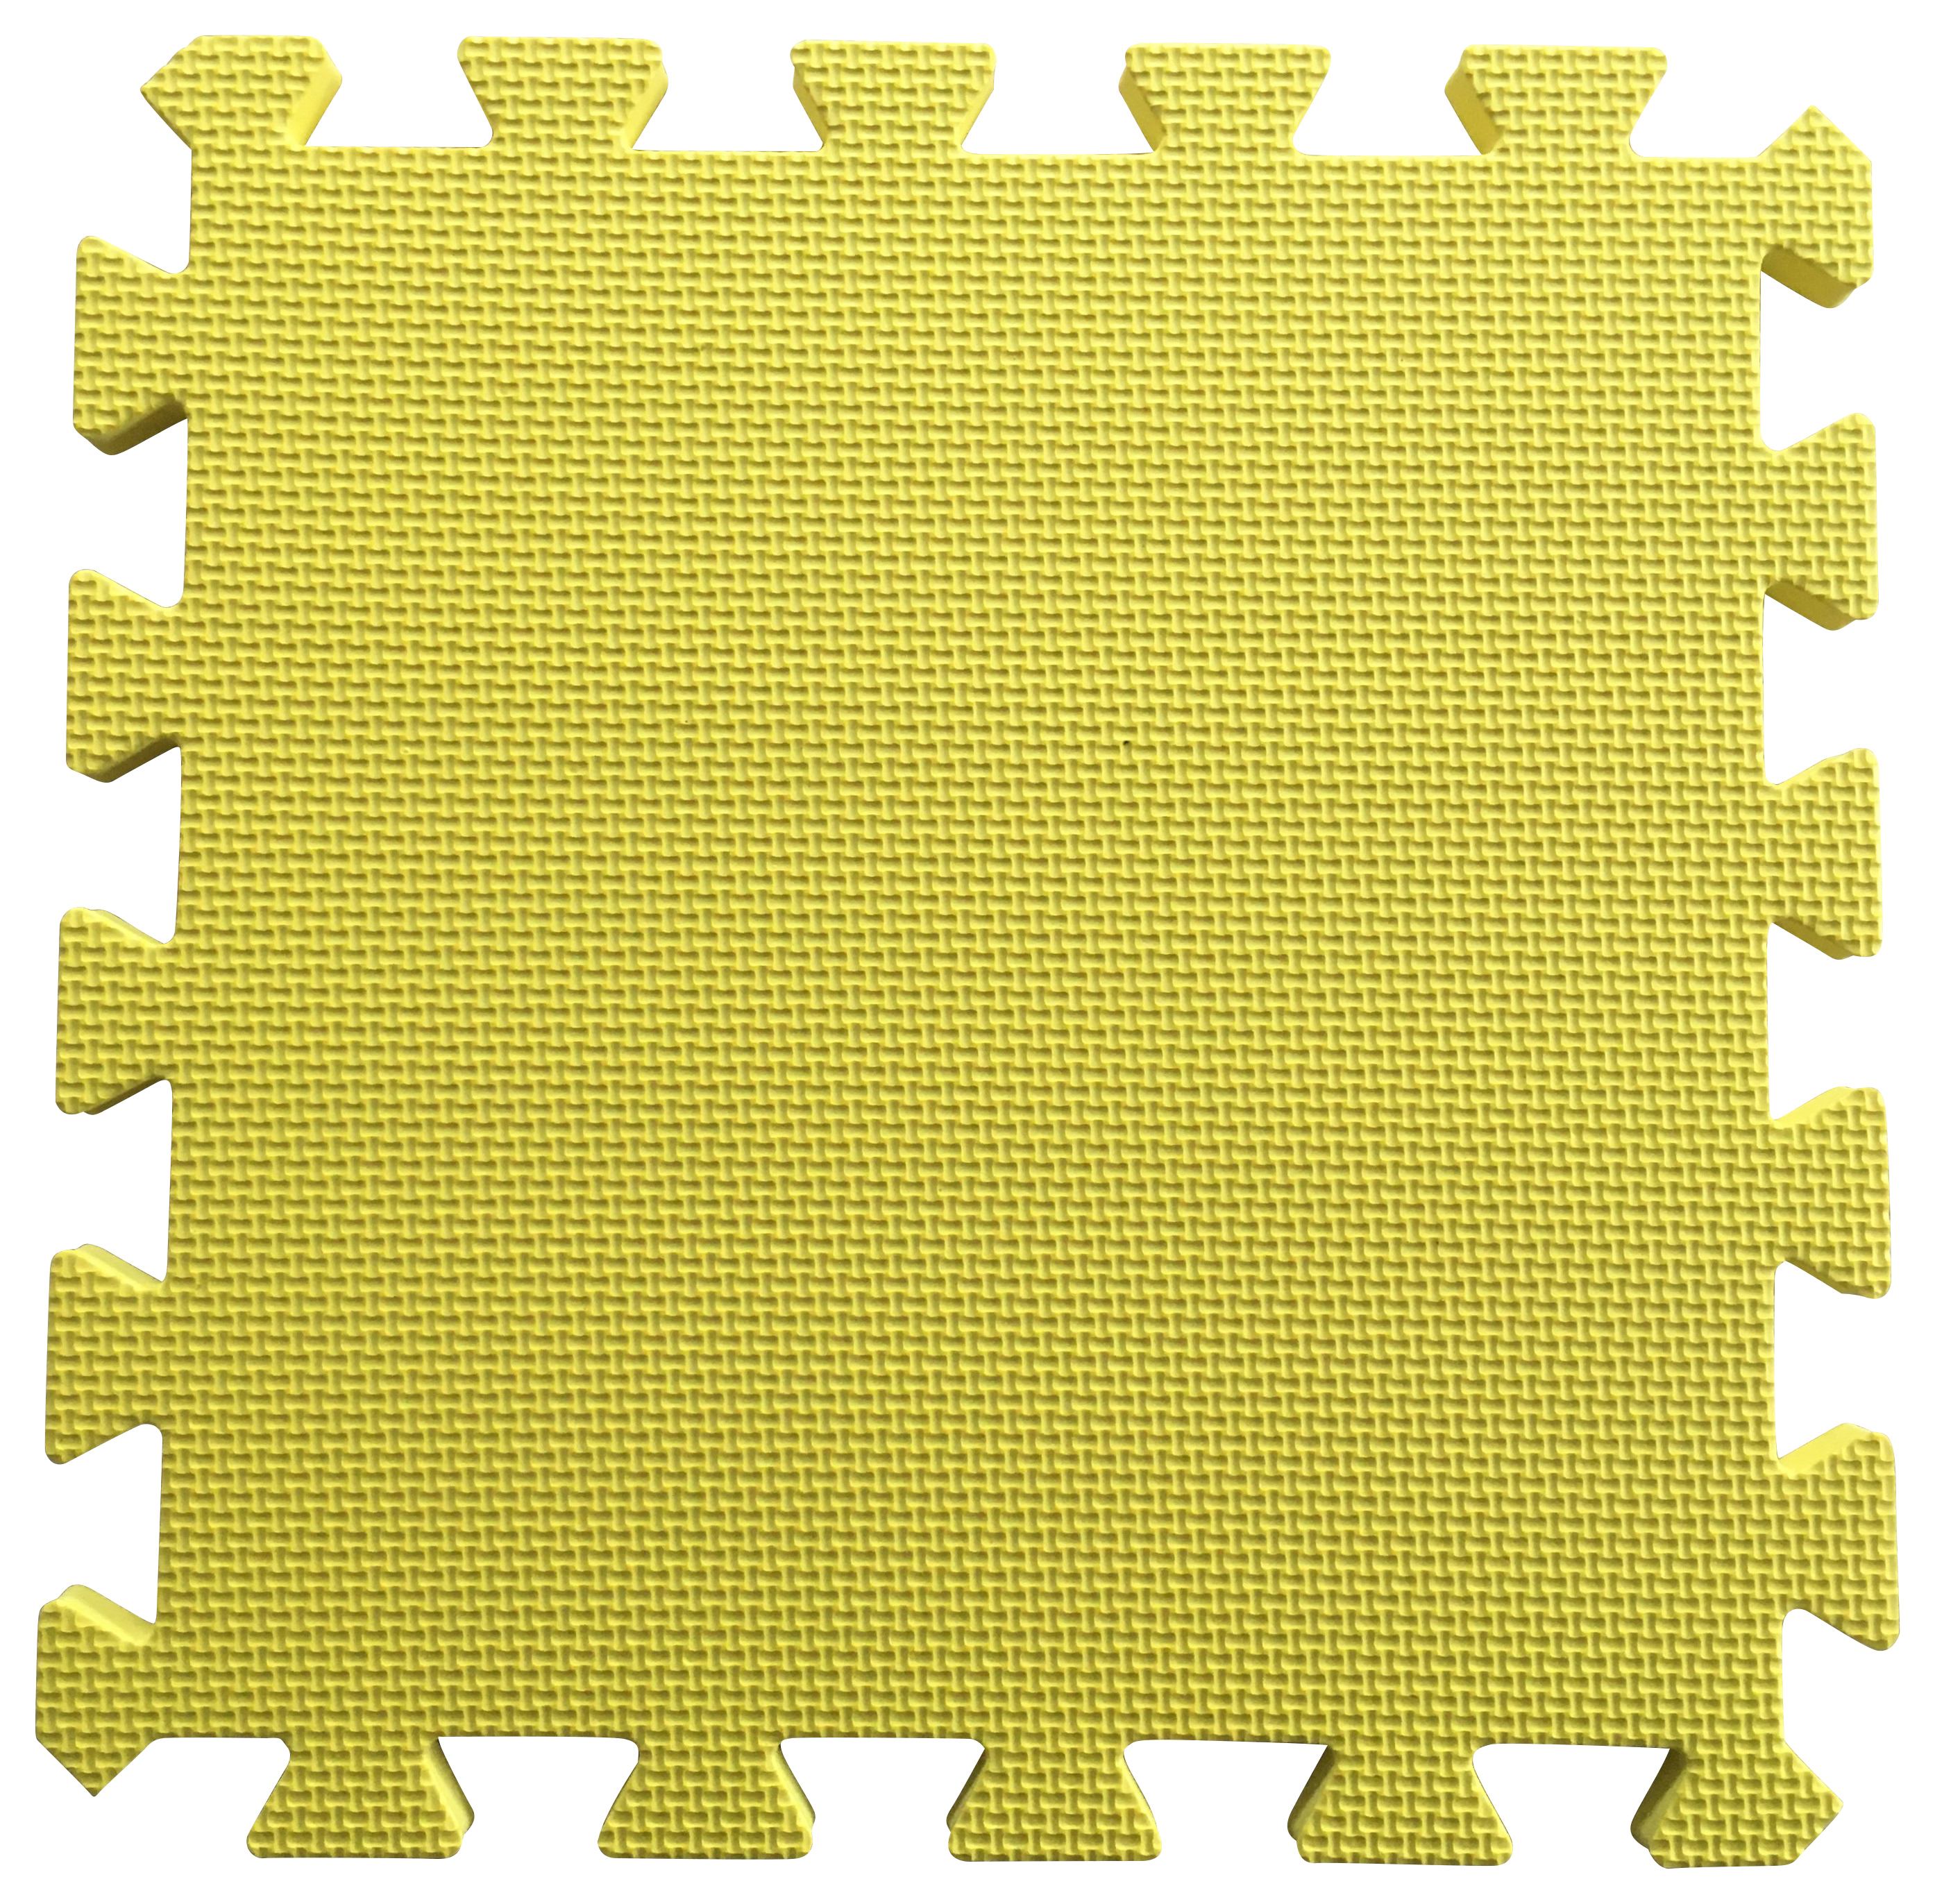 Warm Floor Yellow Interlocking Floor Tiles for Garden Buildings - 11 x 10ft